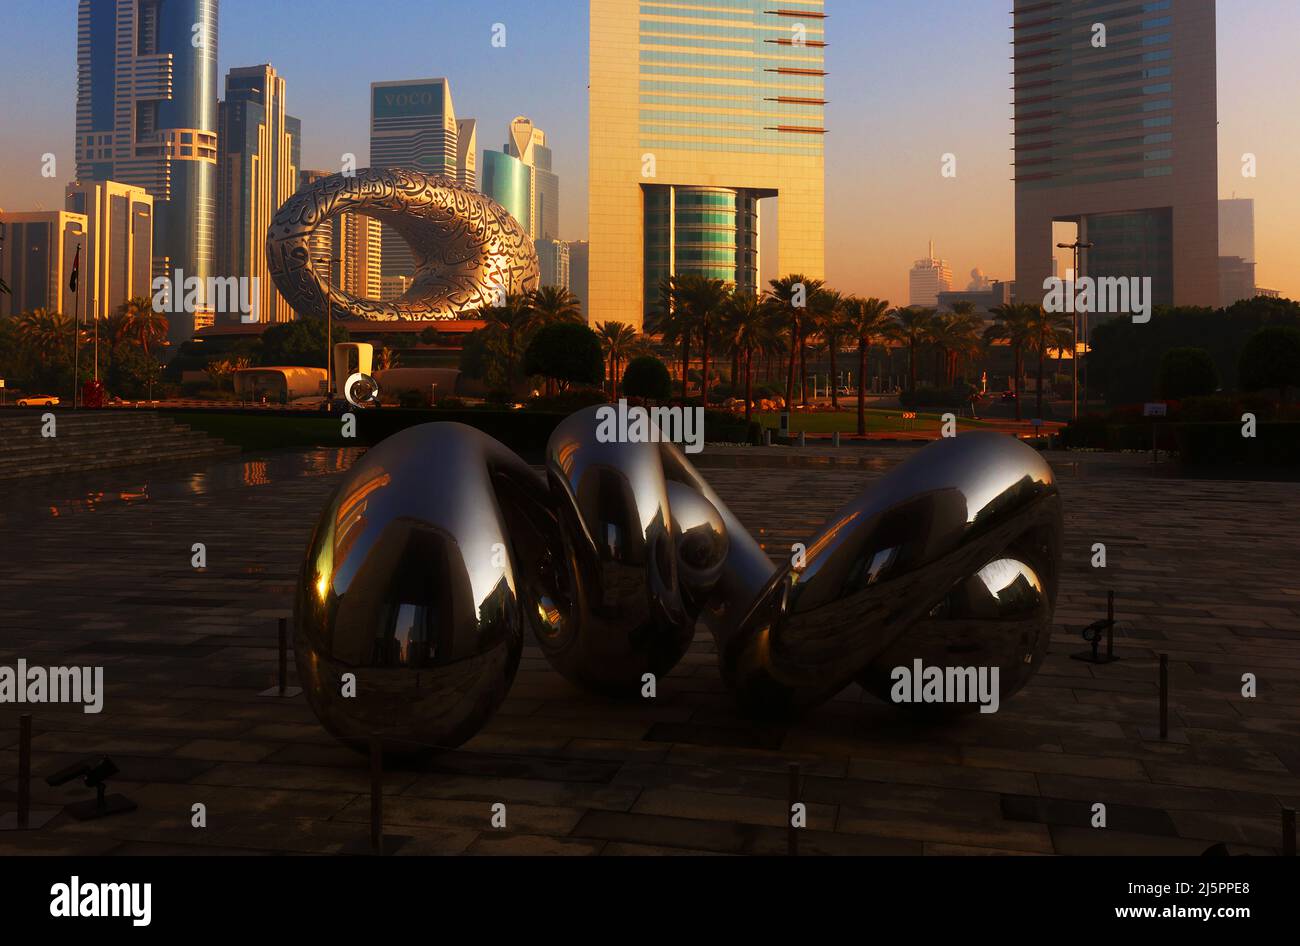 Museum, Dubai, Downtown, Atemberaubende Aussicht auf die Skyline von Dubai mit künstlerischer skulptur und Museum der Zukunft erbaut für die Expo Foto Stock